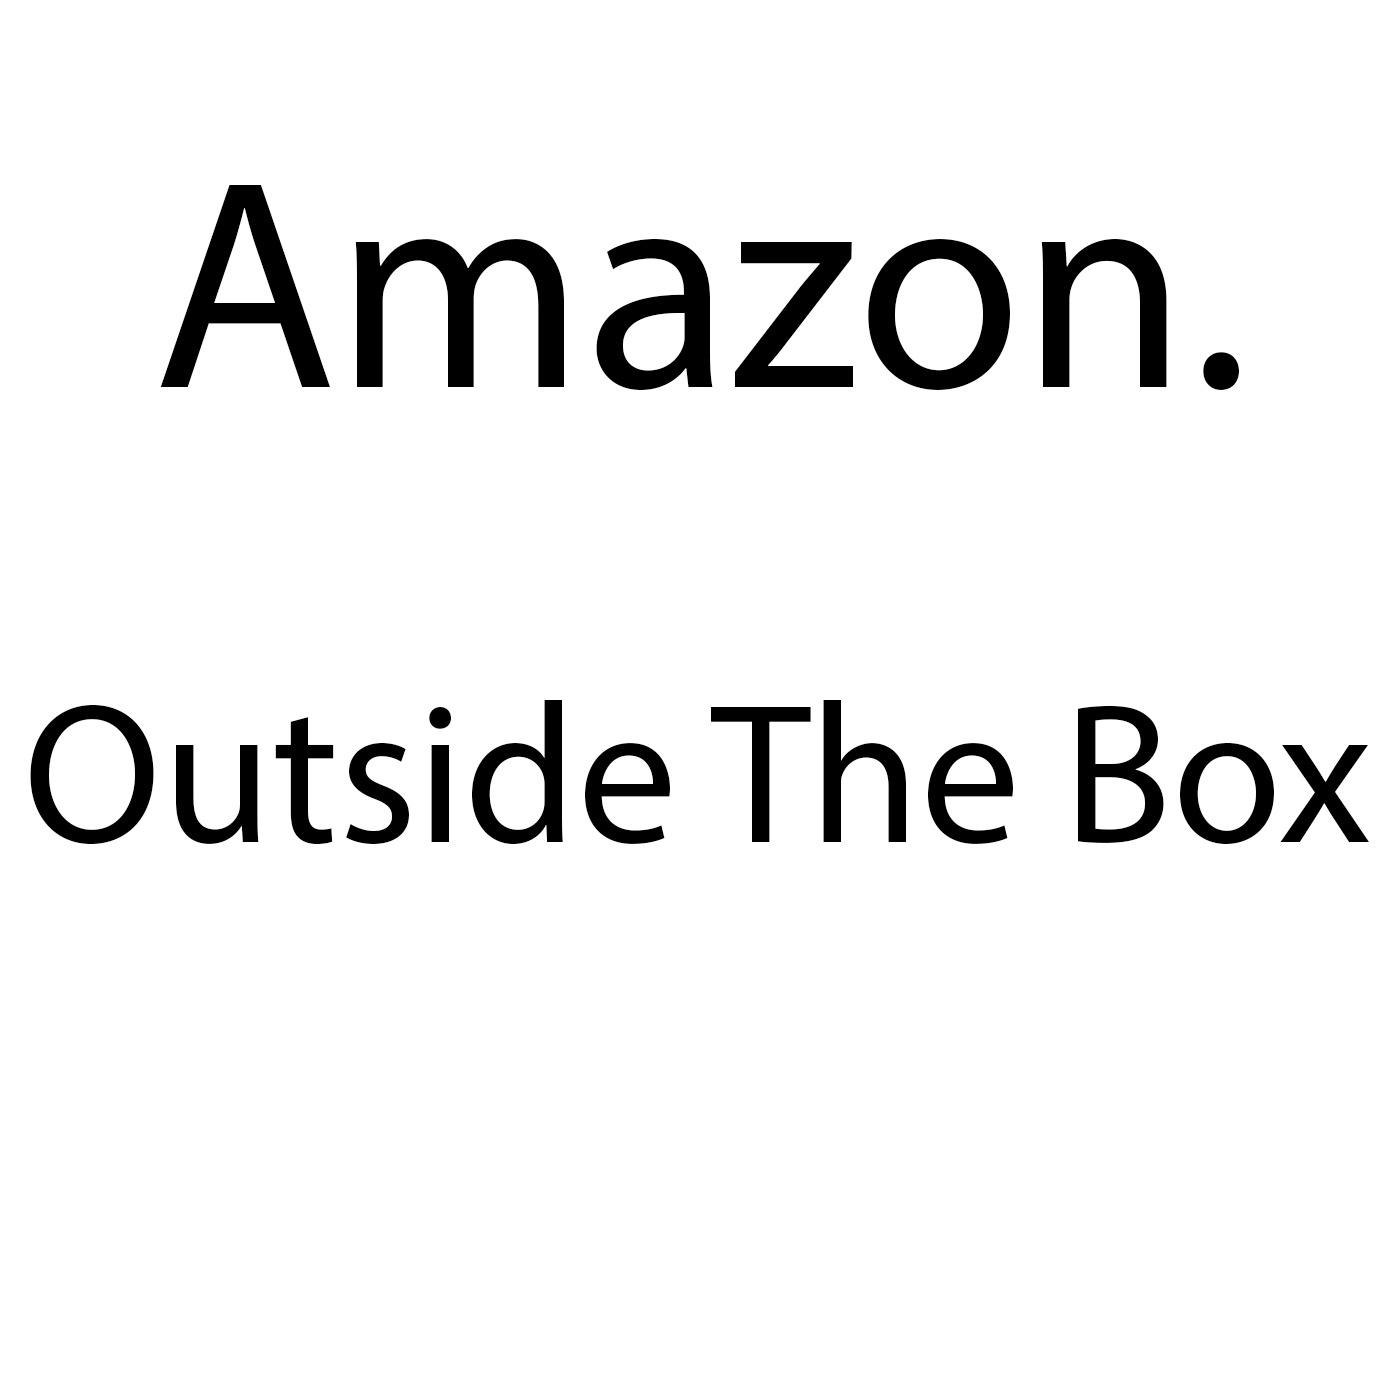 Amazon Outside the Box